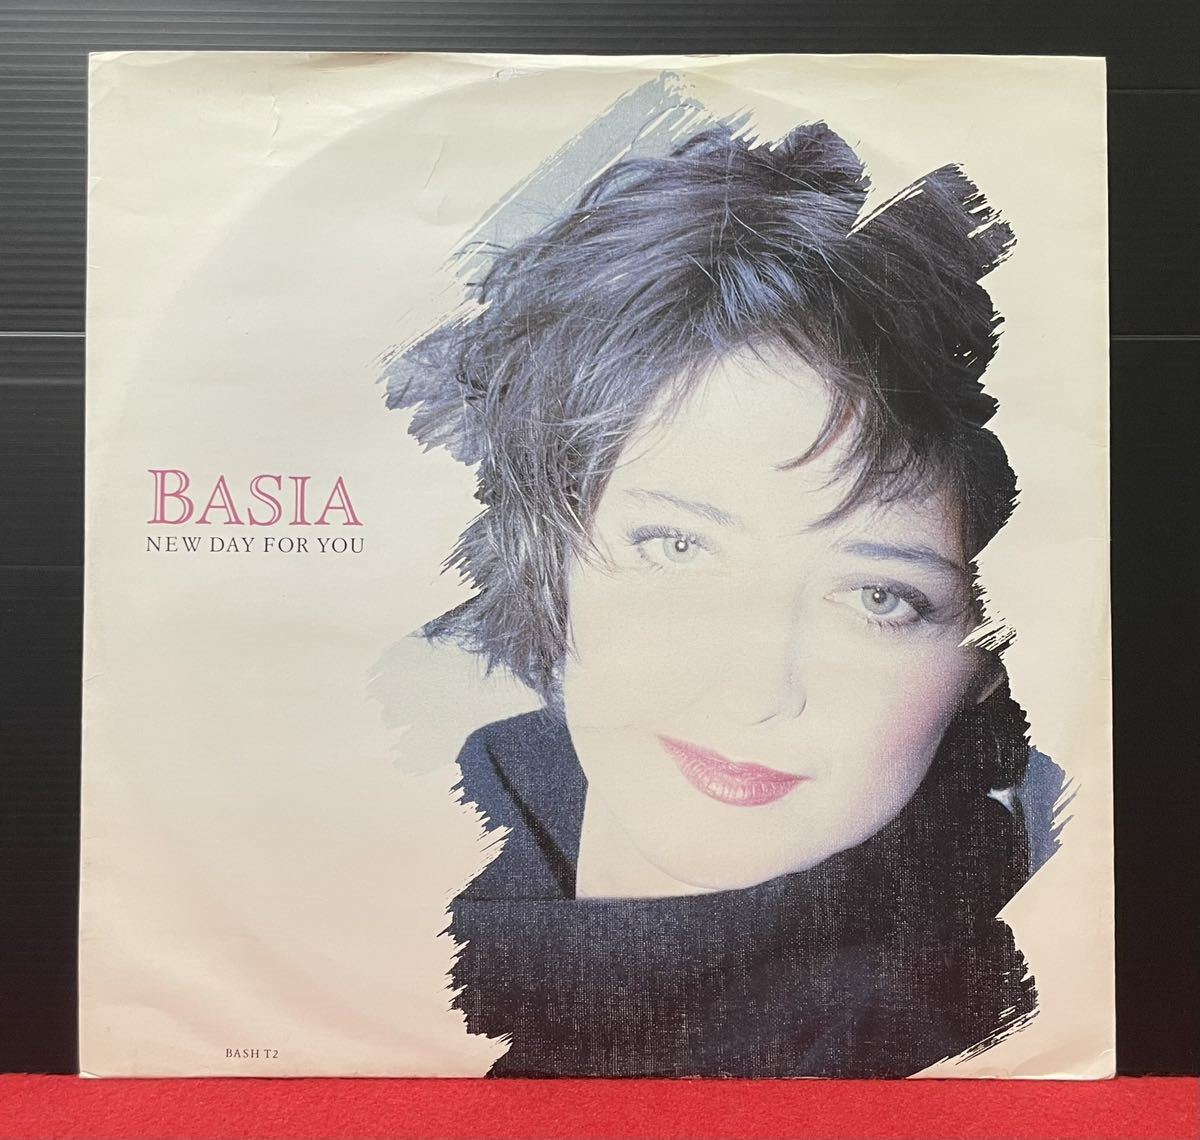 Basia / New Day For You バーシア 12inch盤その他にもプロモーション盤 レア盤 人気レコード 多数出品。の画像1